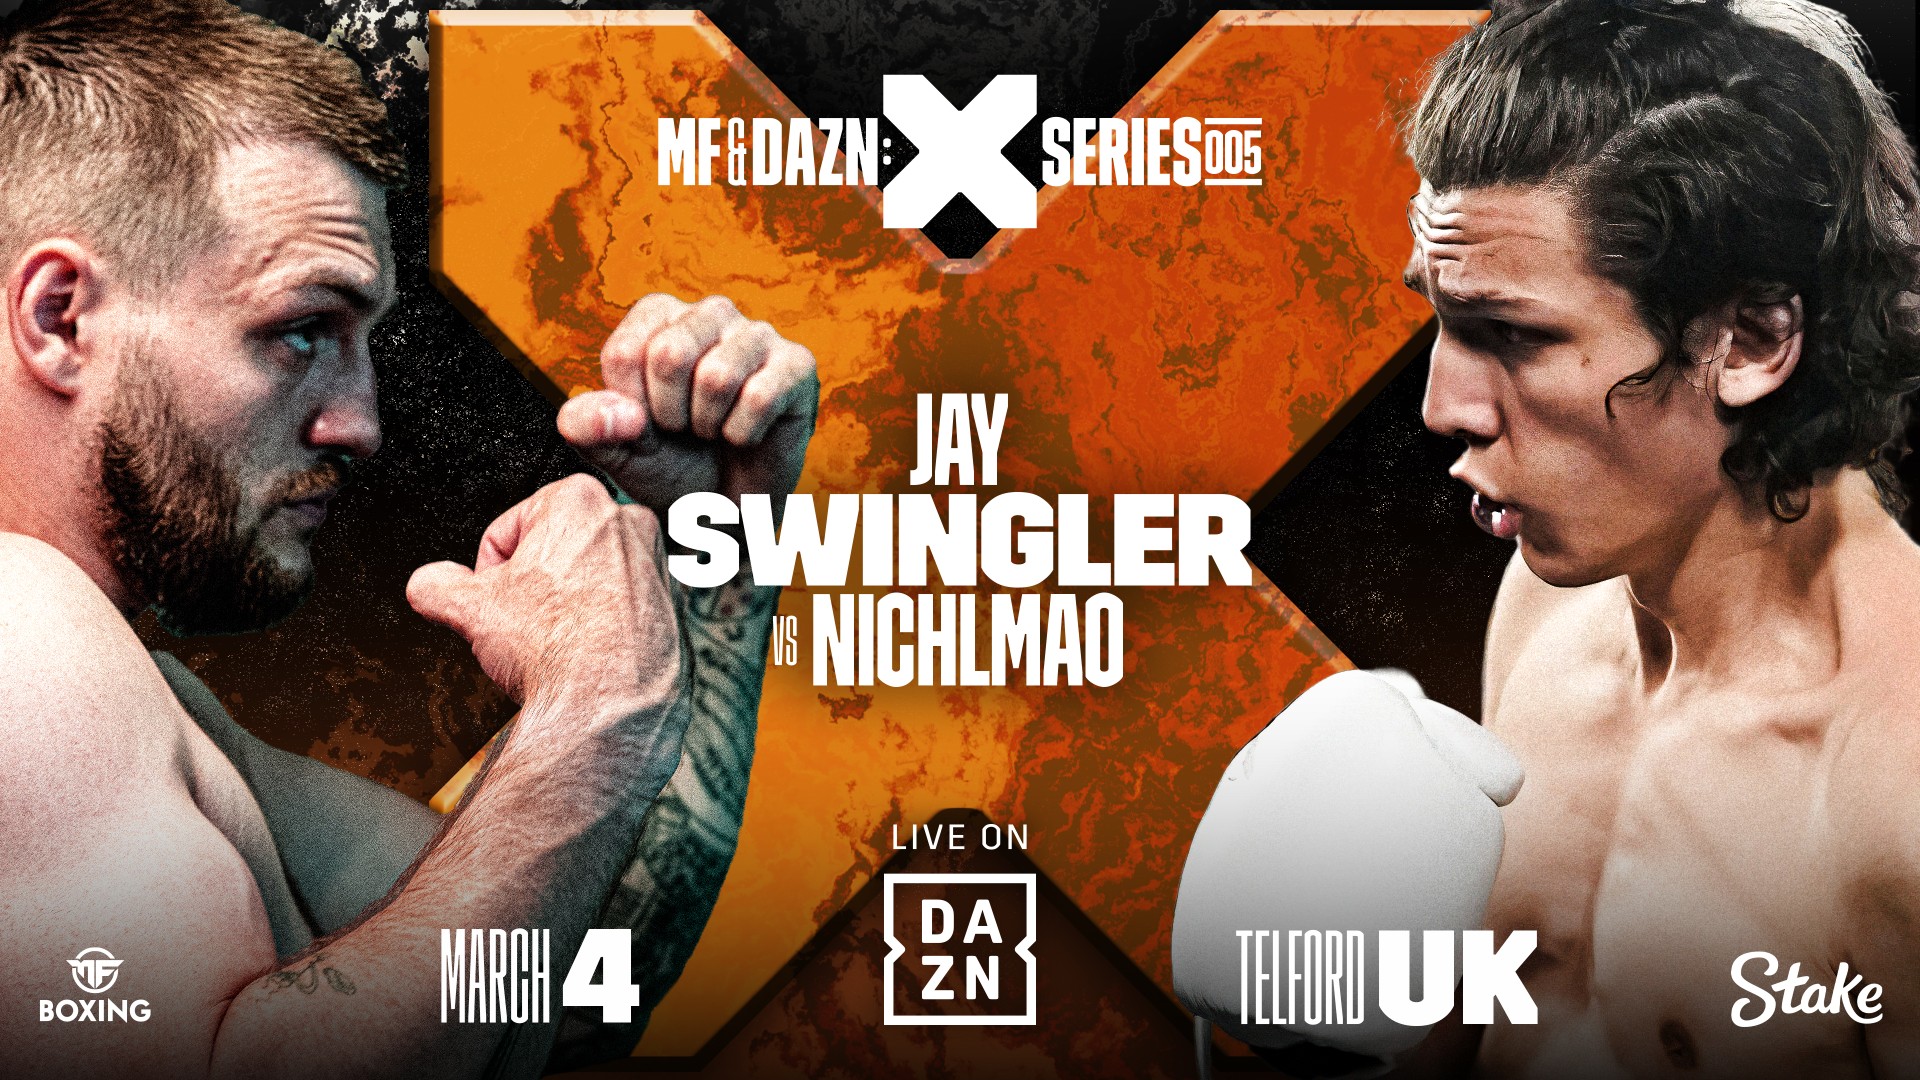 Jay Swingler vs